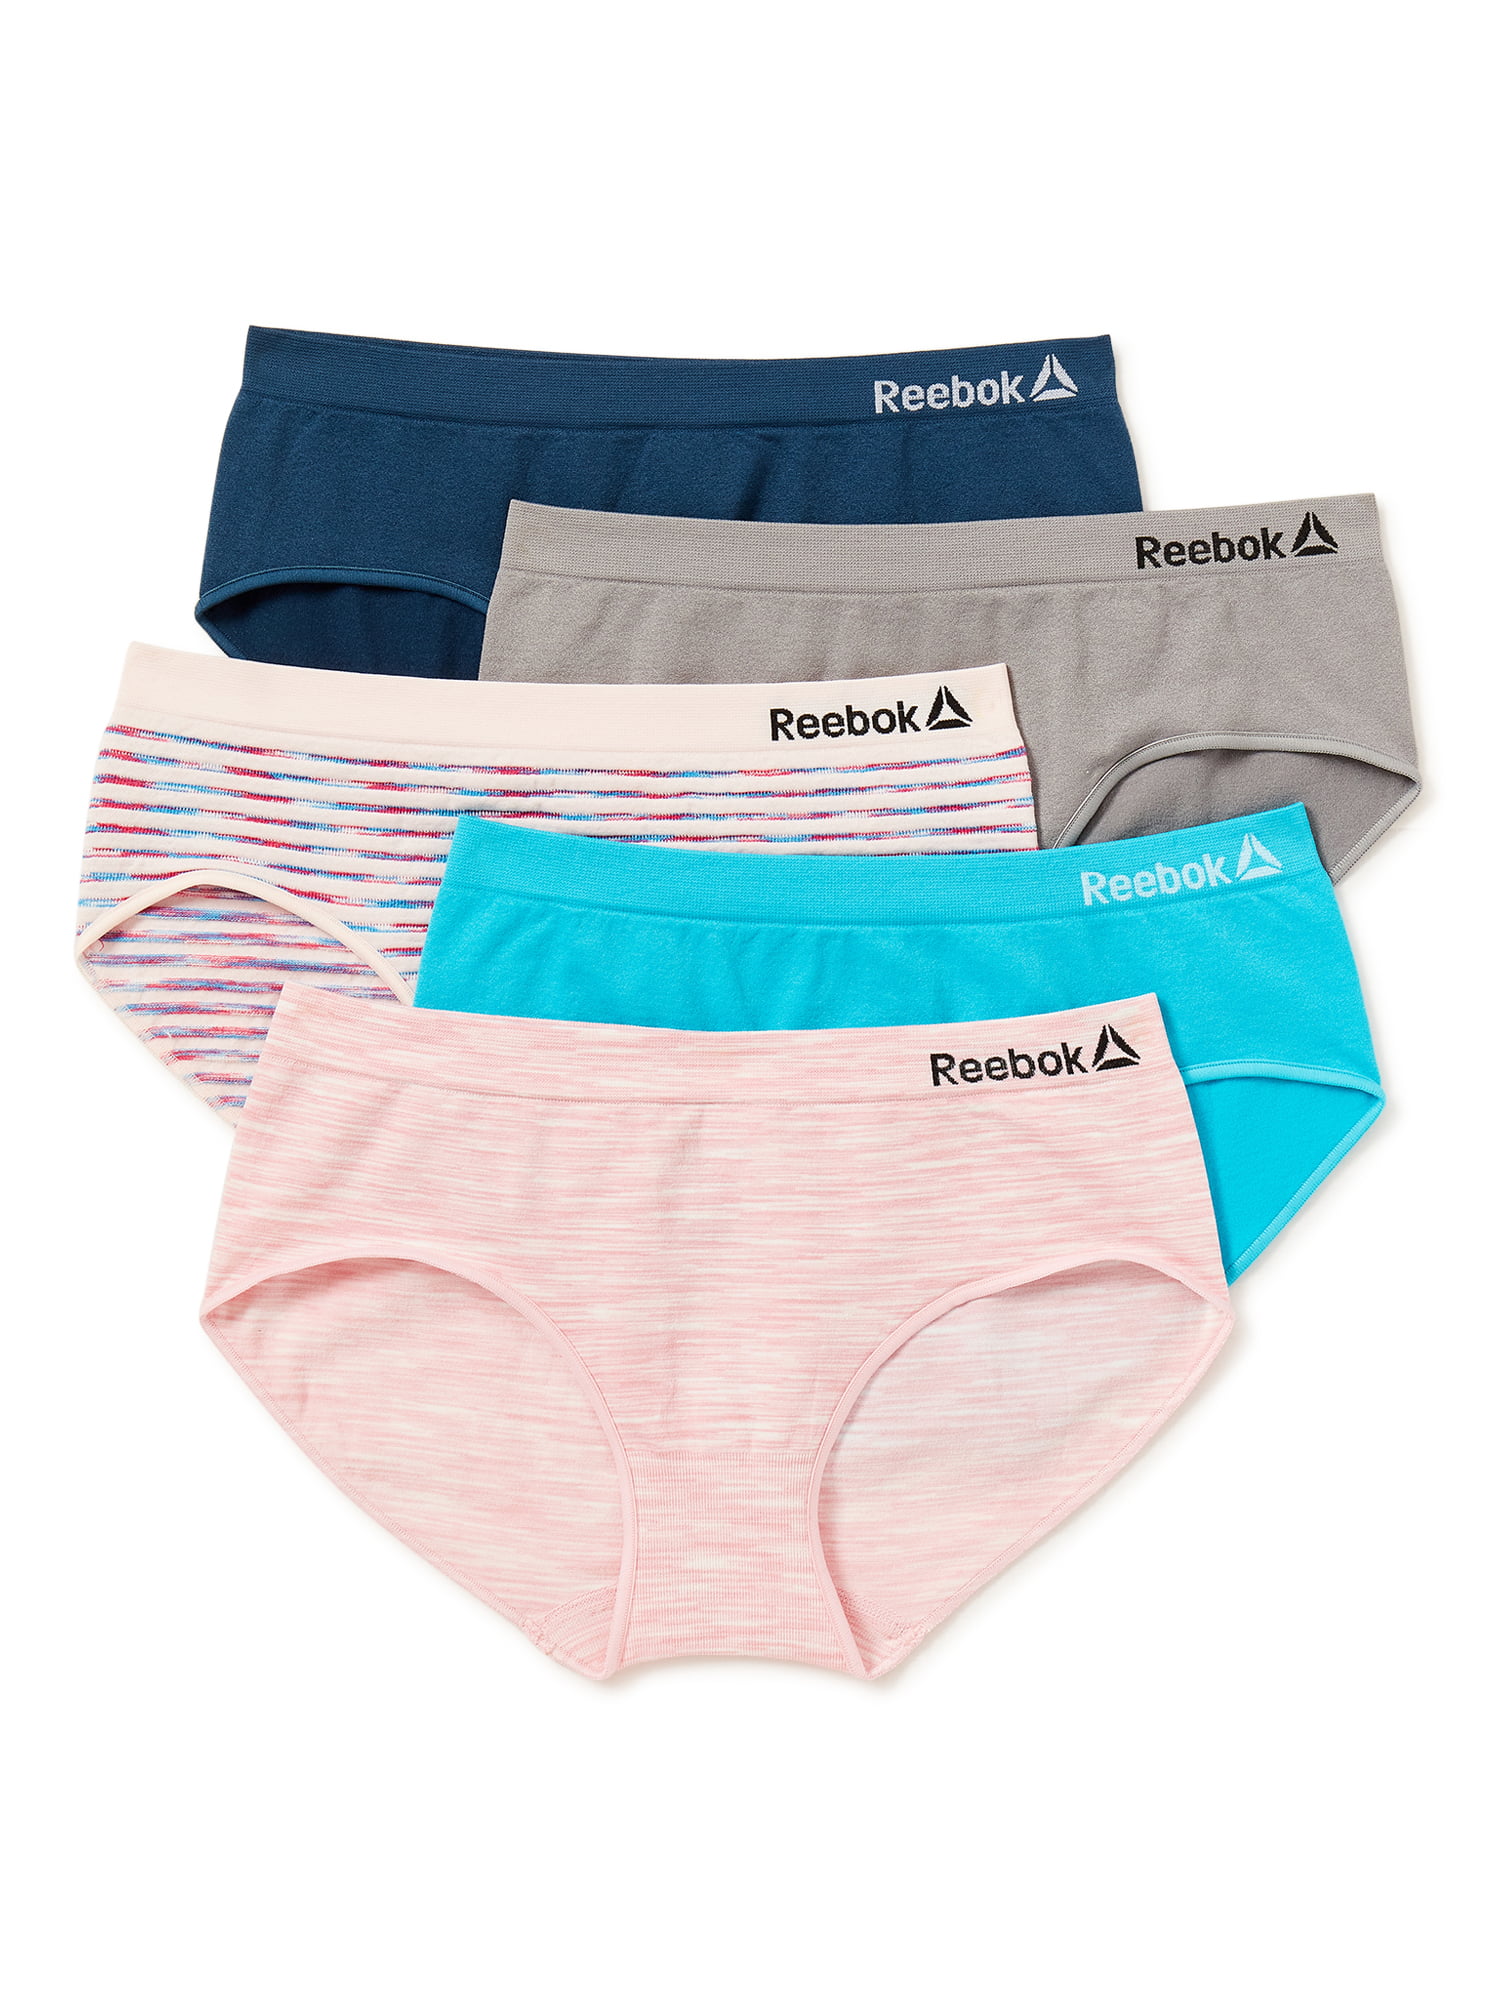 Reebok Girl's Underwear 7 Pack 100% Cotton Hipster Briefs 